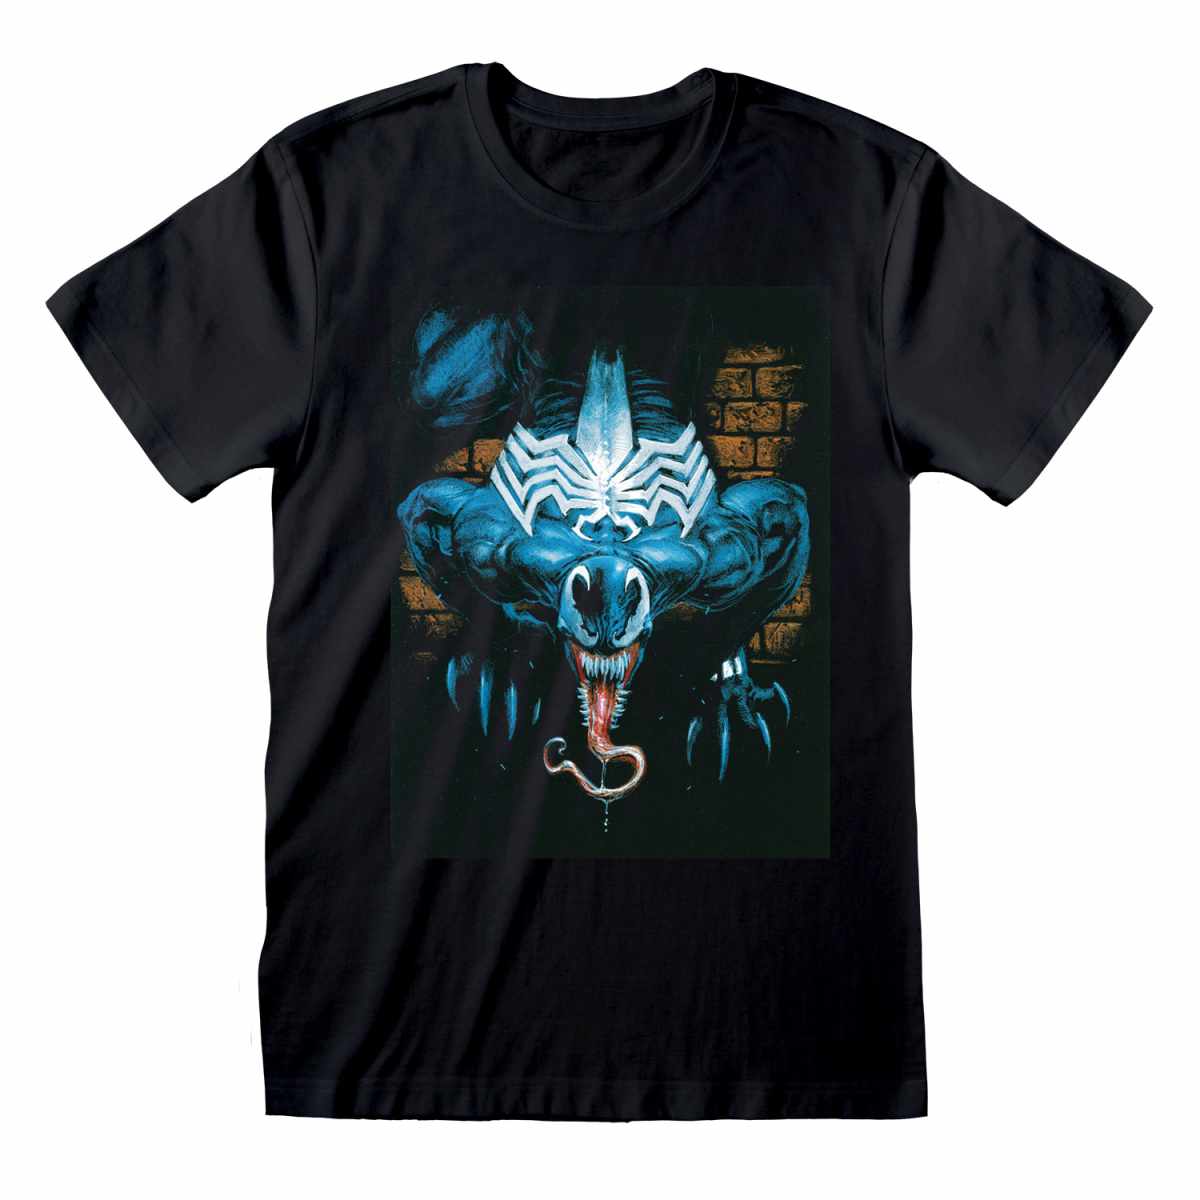 (ヴェノム) Venom オフィシャル商品 ユニセックス Wall Lurker Tシャツ 半袖 トップス 【海外通販】